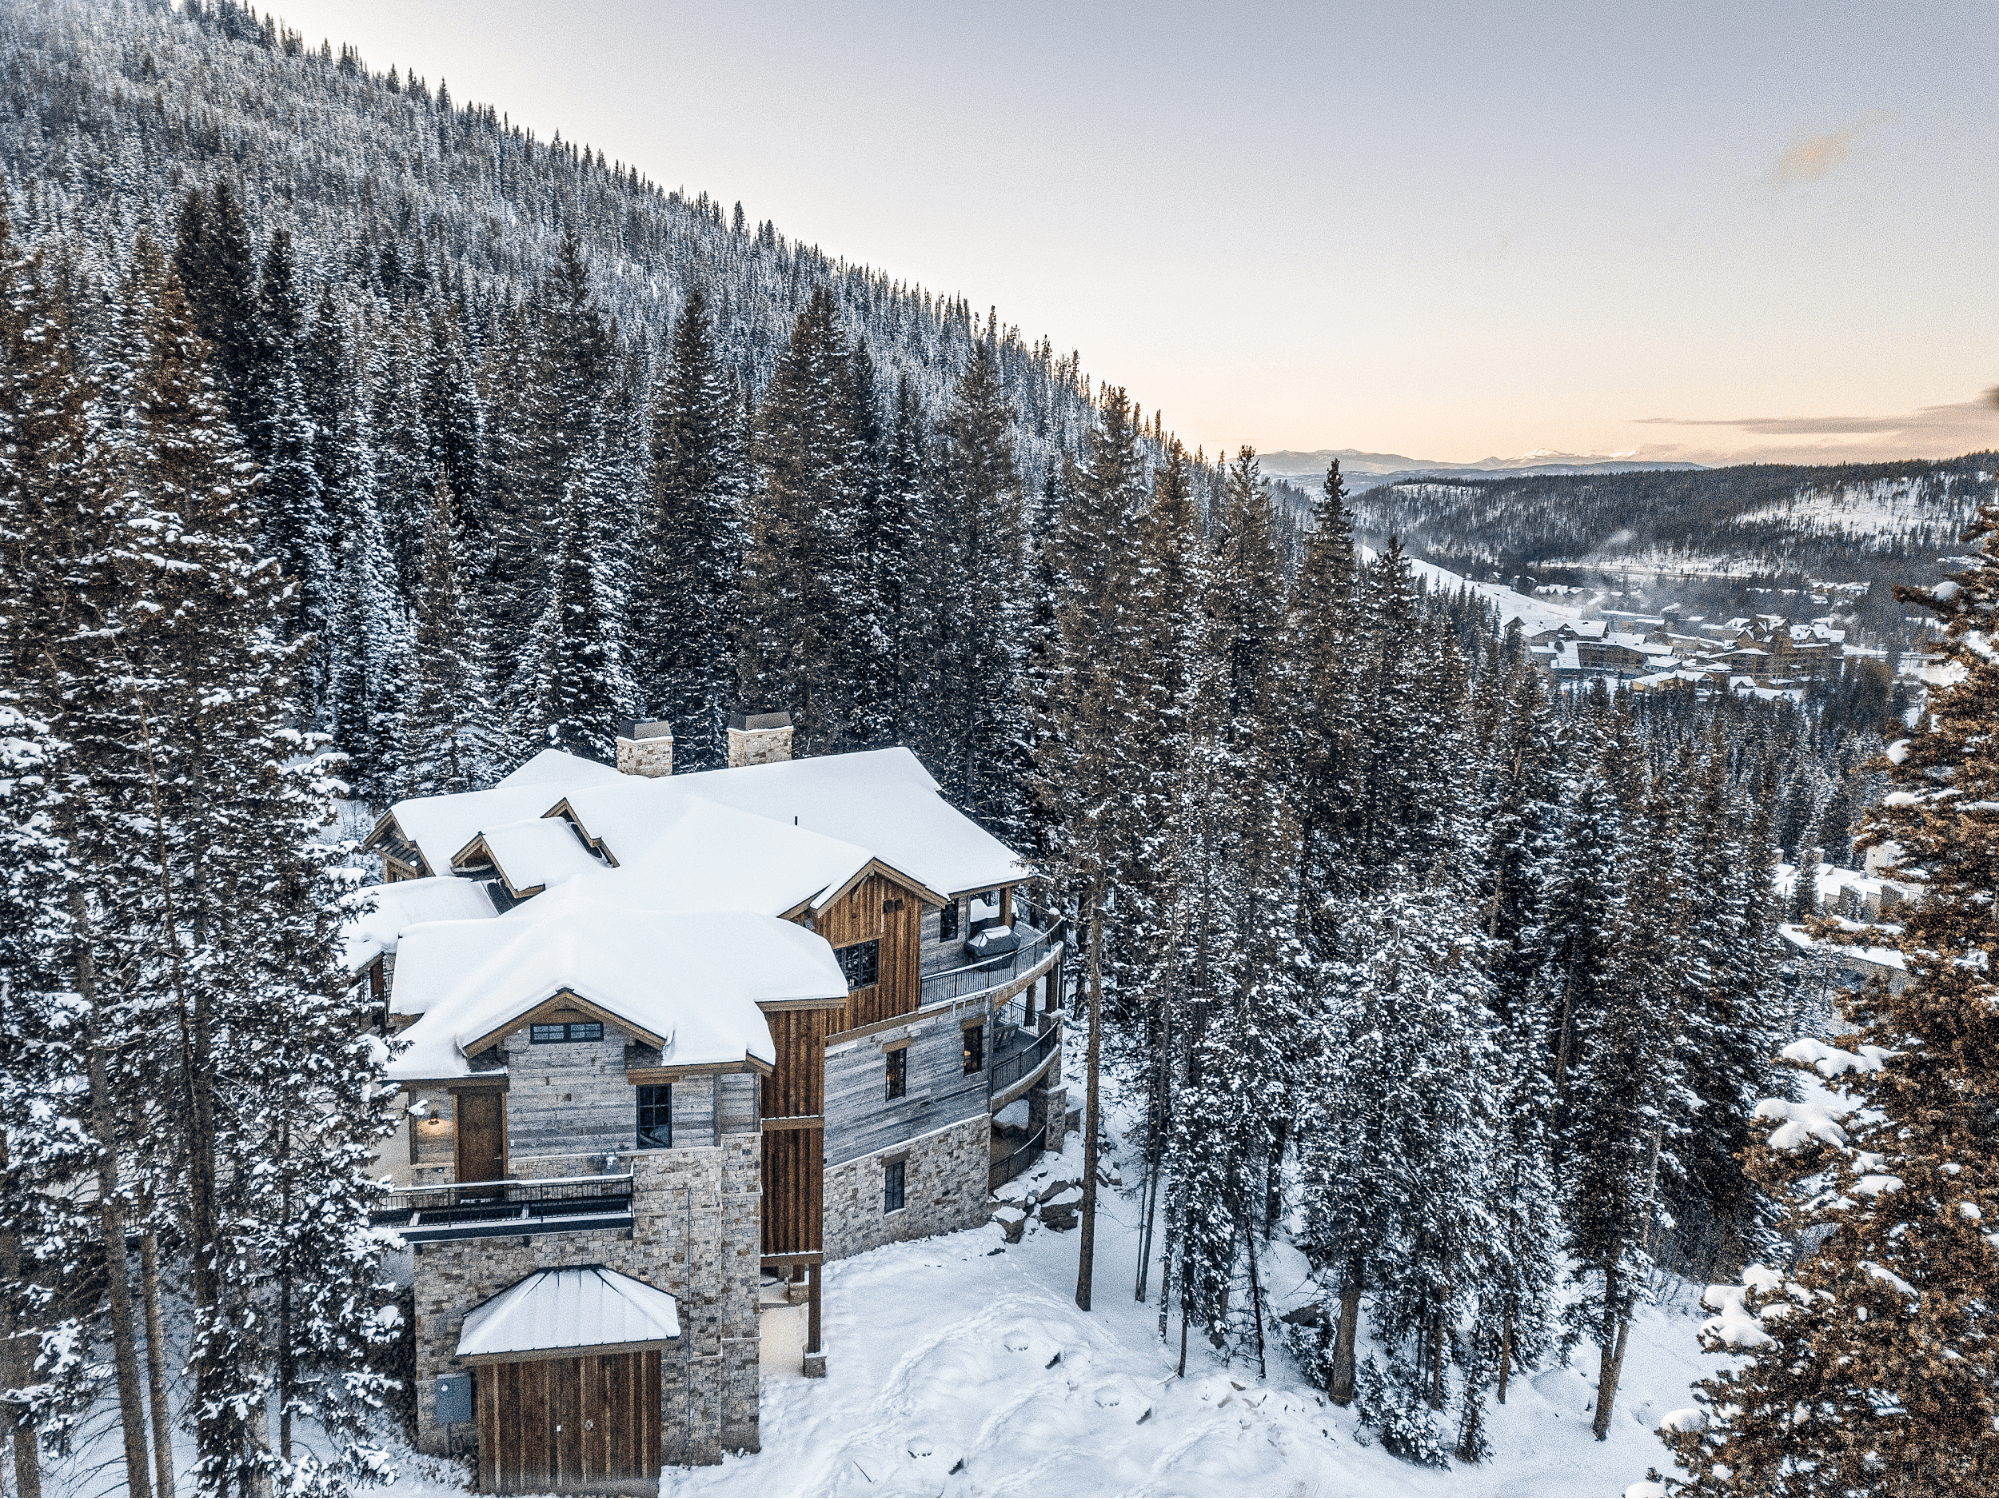 An astonishing bird's-eye view of an exquisite Rocky Mountain cabin.